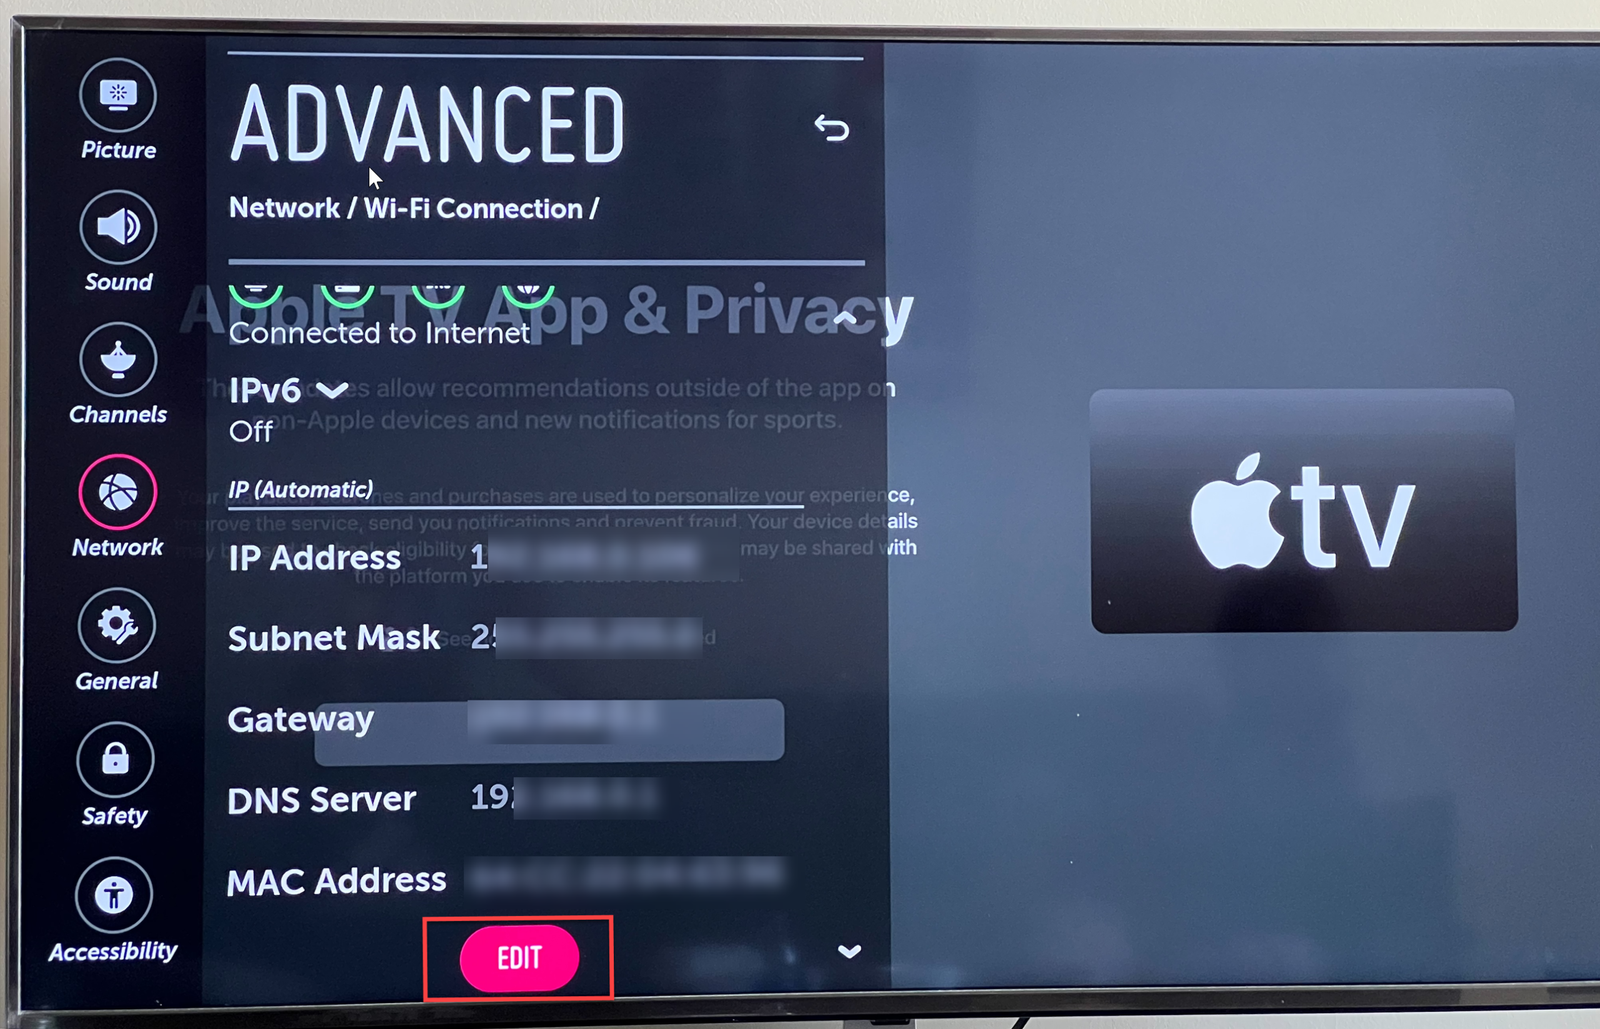 Edit on Advance WIFI settings on LG TV